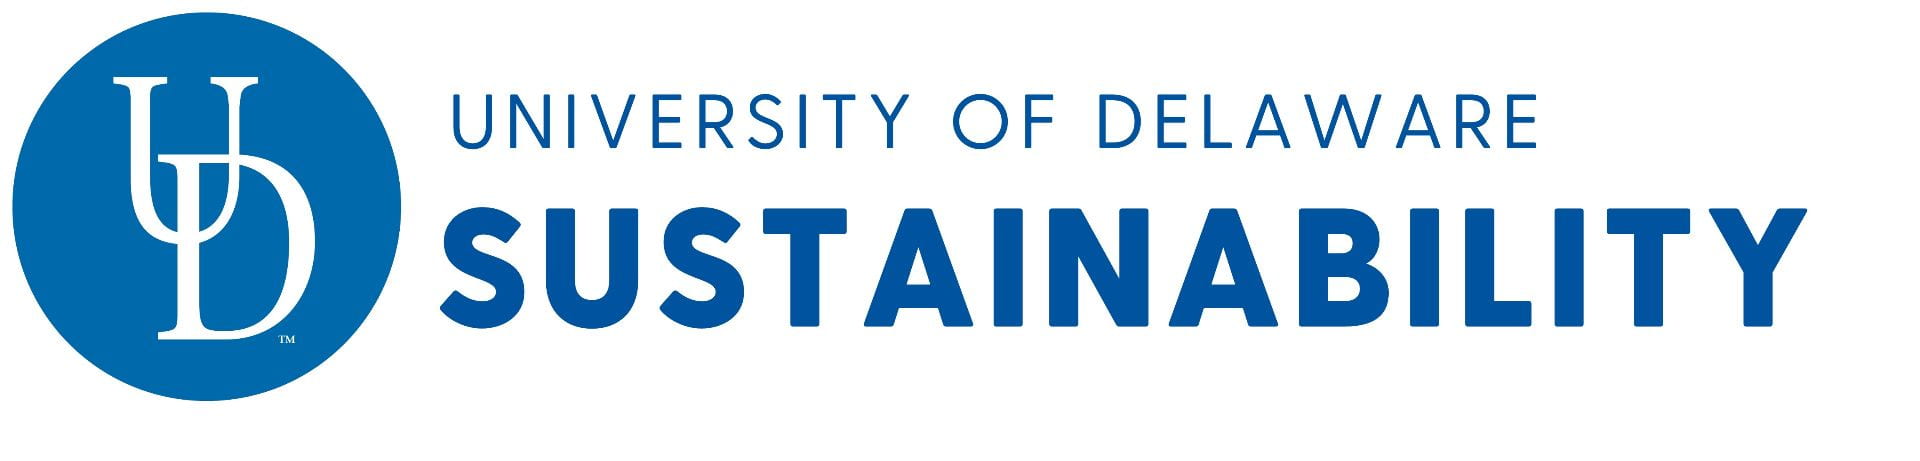 University of Delaware Sustainability